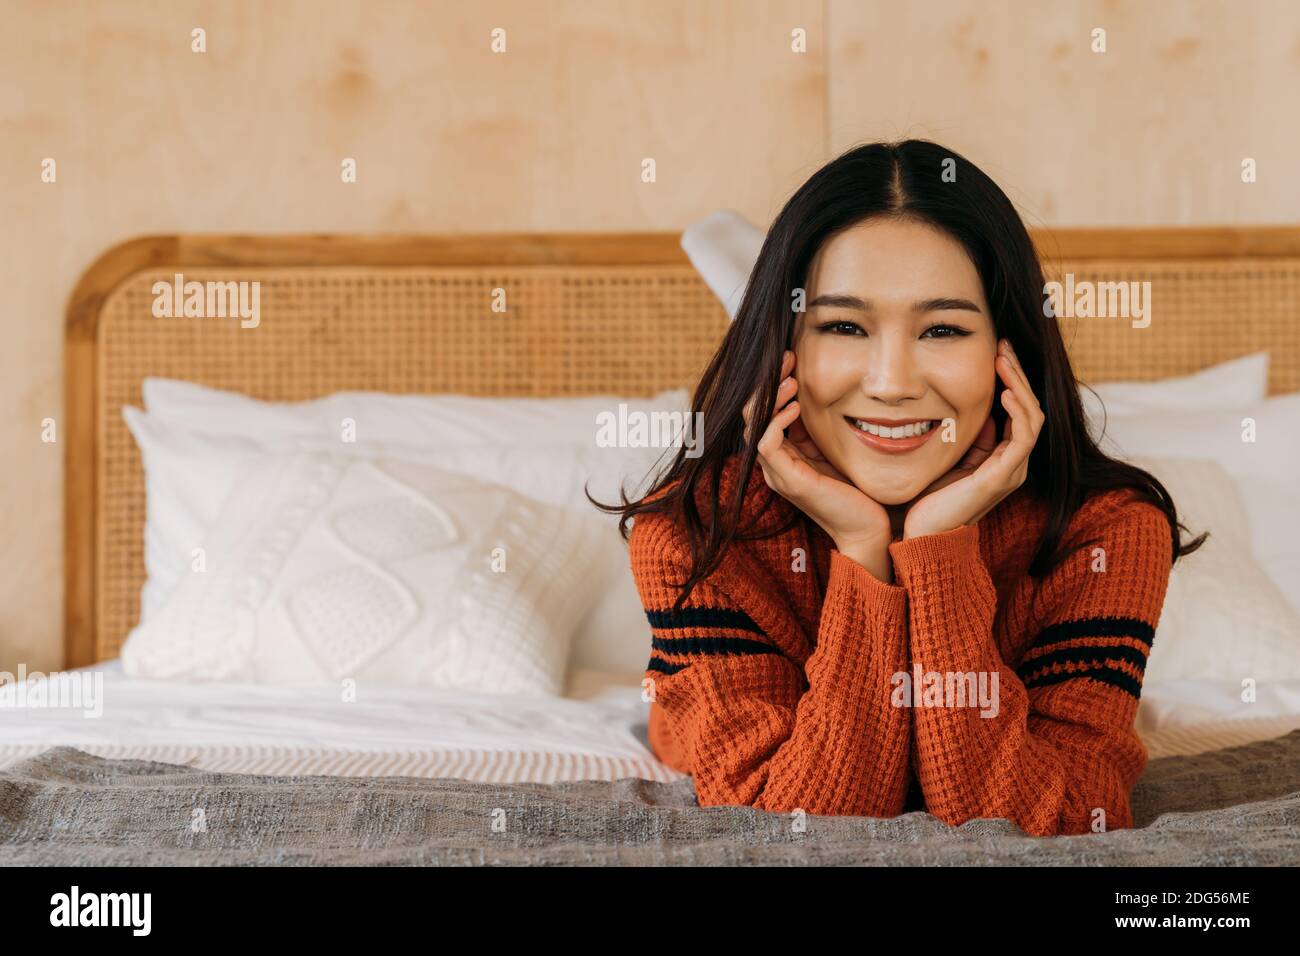 Junge Teenager asiatische Frau trägt einen Pullover mit hübschen Lächeln Blick auf Kamera im Schlafzimmer. Attraktive Mädchen mit Gesichtsbehandlung und gesunde Schönheit Haut Winter Portrait Mode Lifestyle. Bannerbereich. Stockfoto